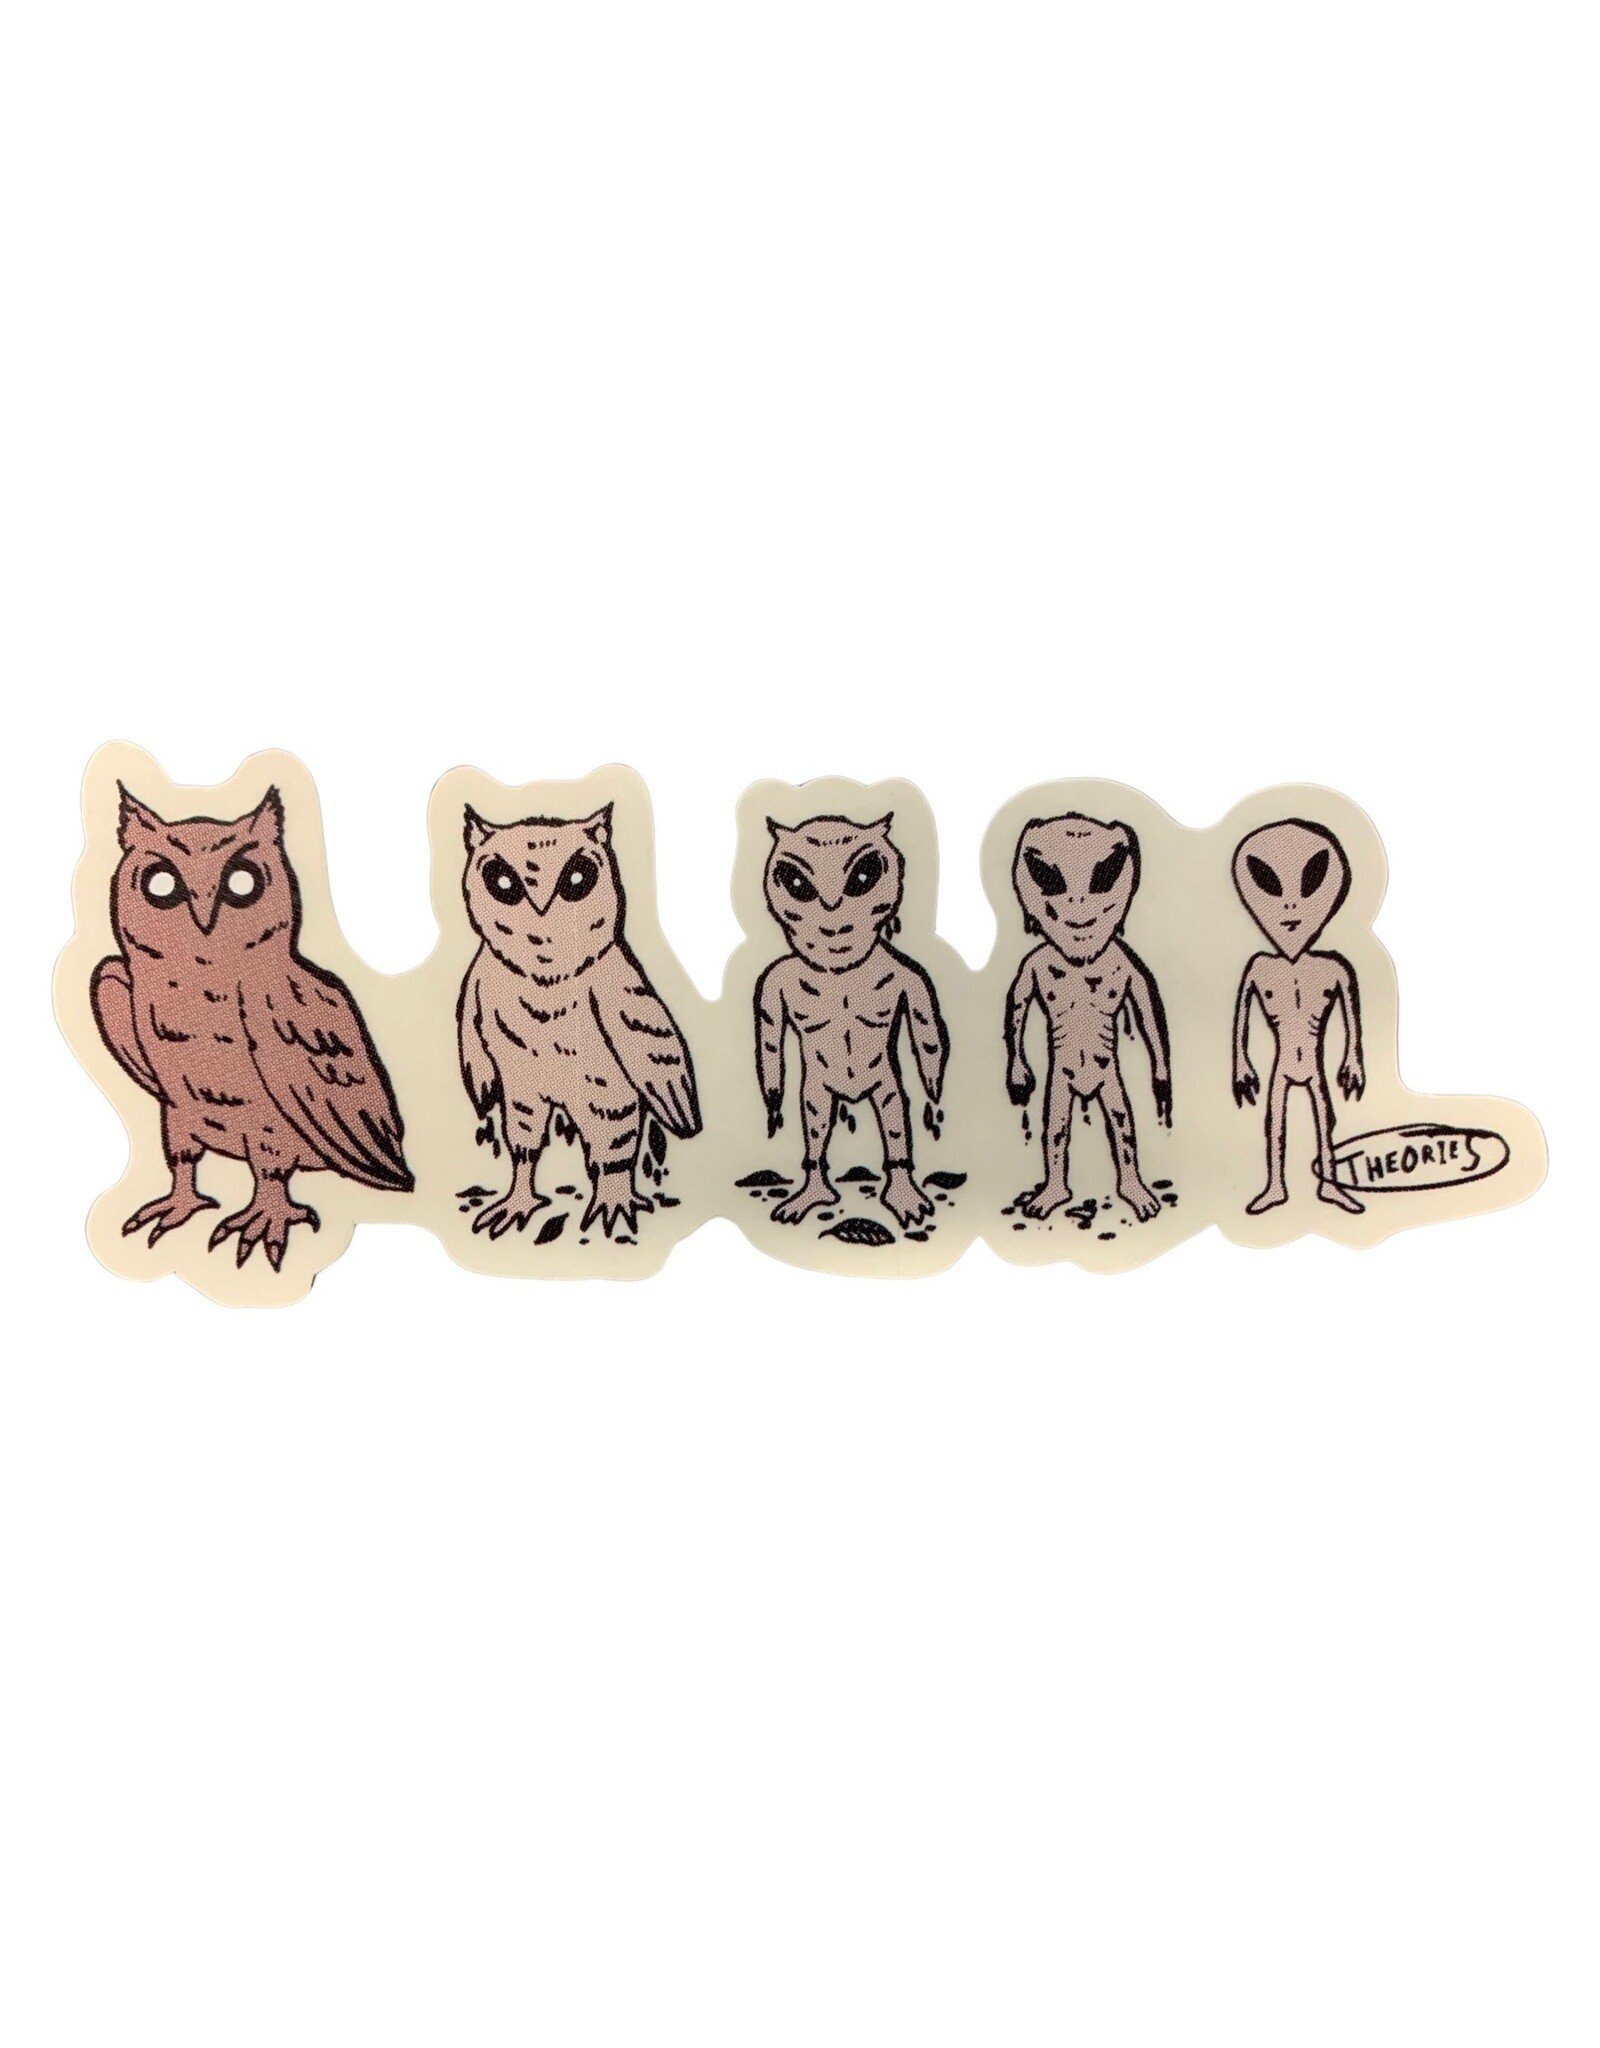 Theories Theories Sticker Owl Evolution